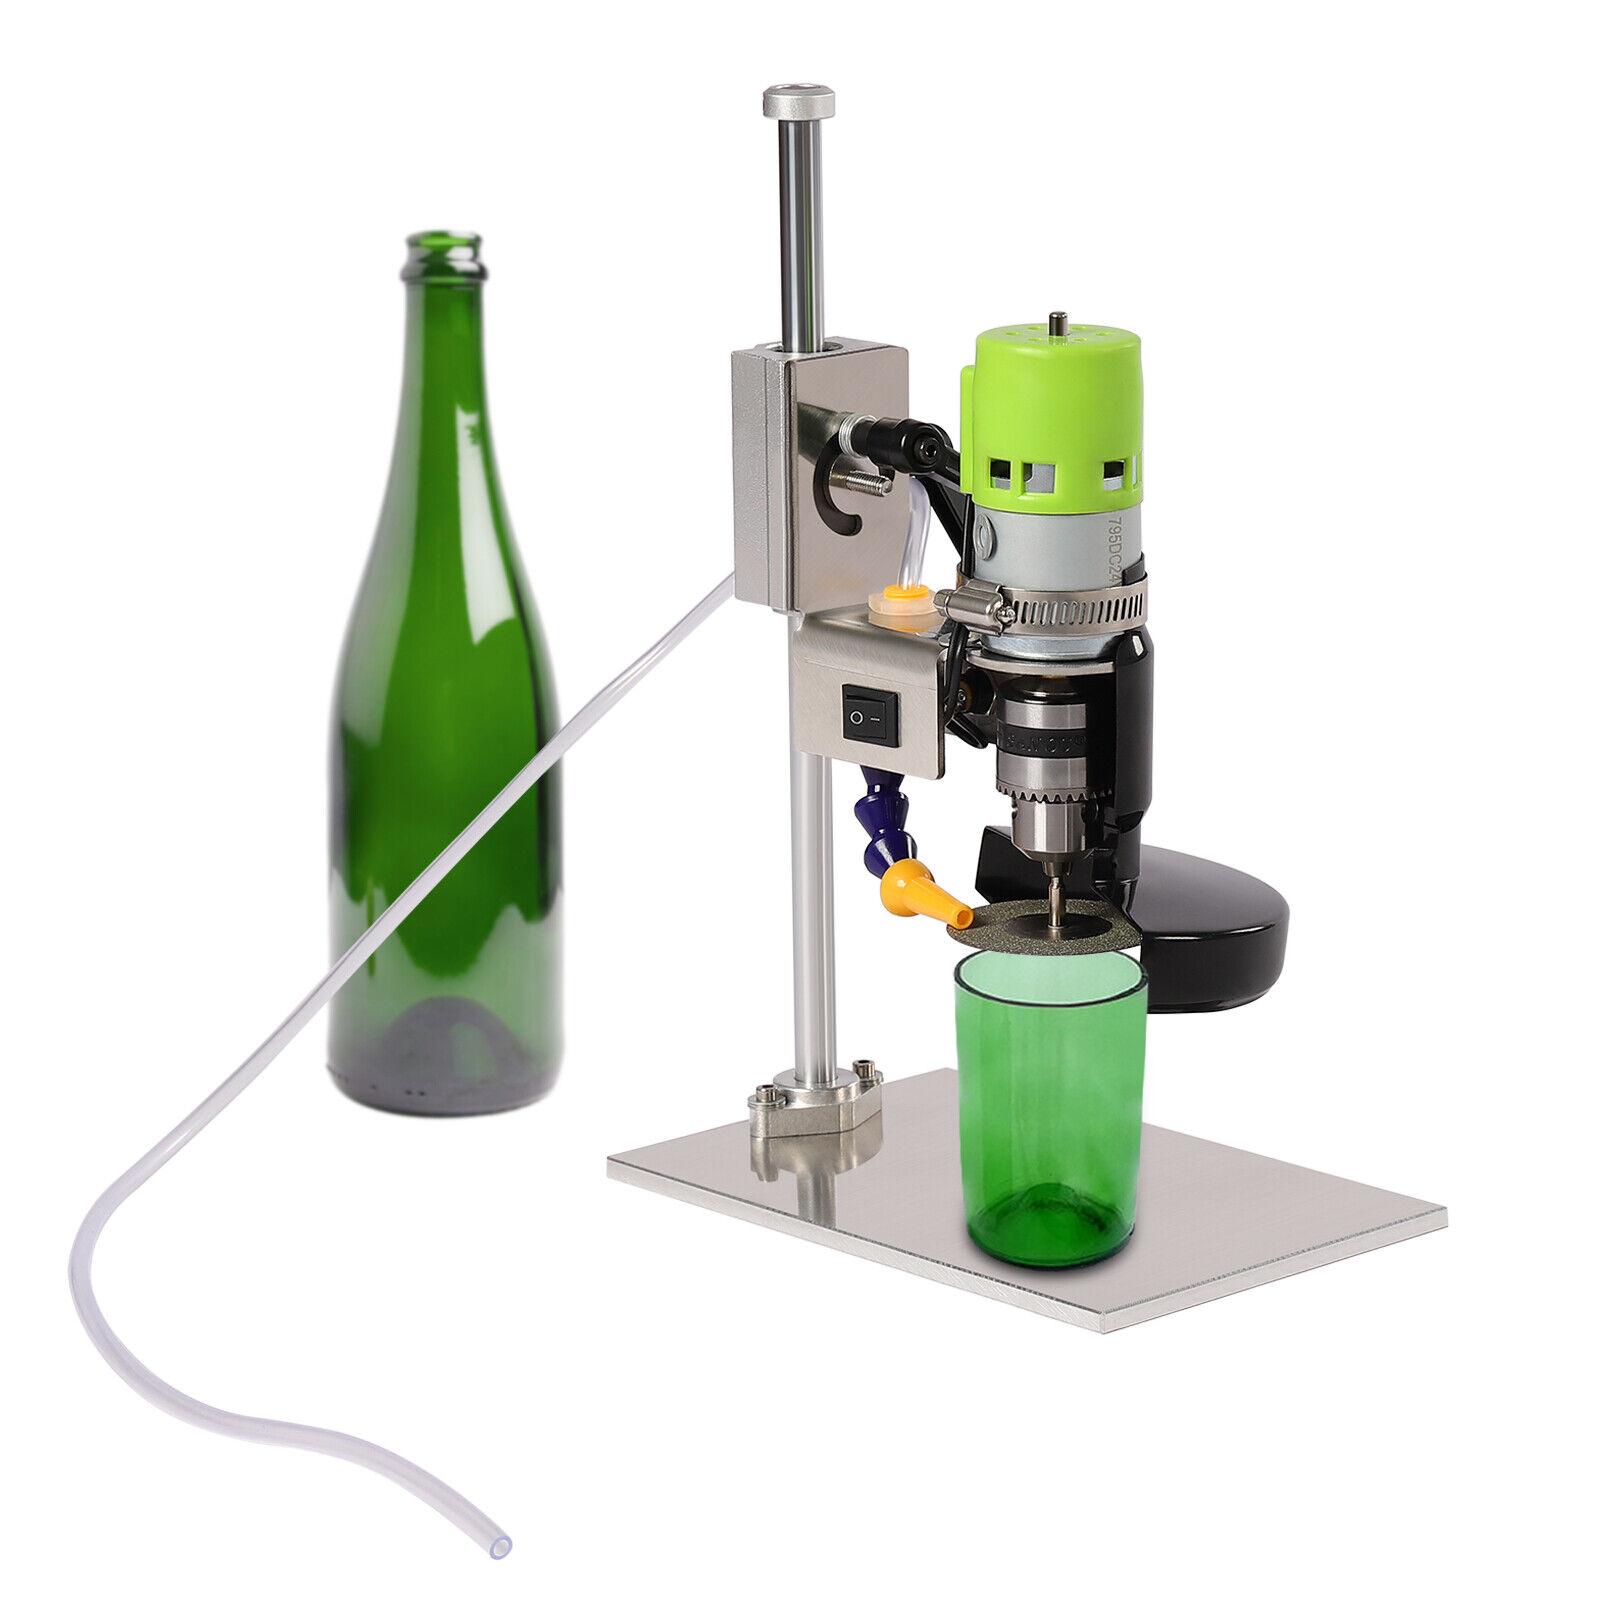 Flkoendmall Electric DIY Glass Bottle Cutter Machine 150W Wine Bottle Cutter Tool 6000R/Min, Size: 13*20*30cm/5.1*7.9*11.8in, Silver